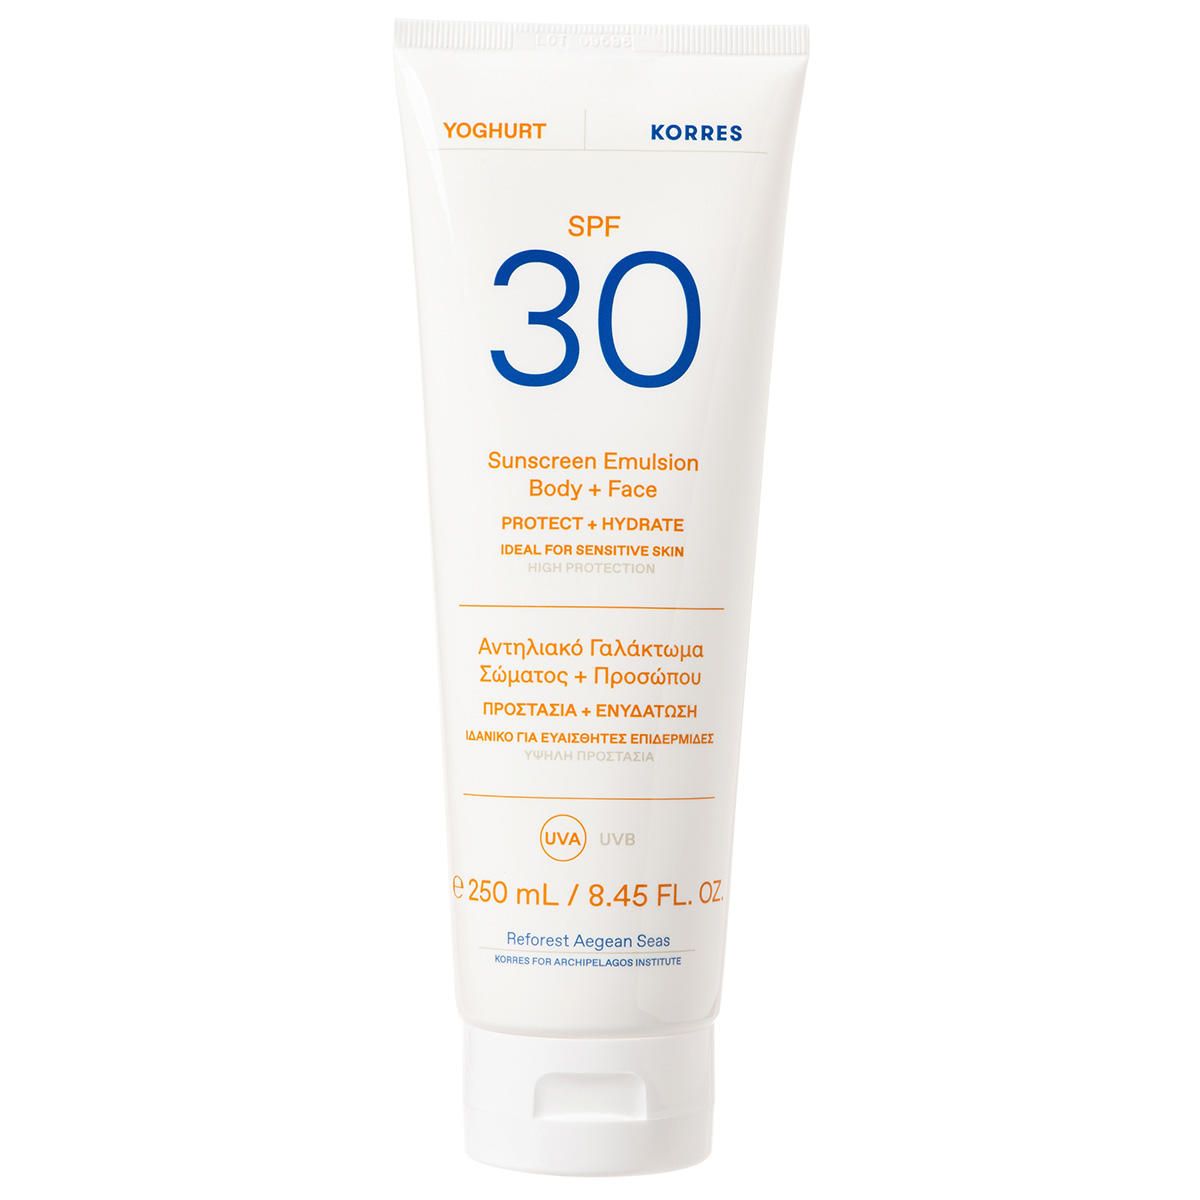 KORRES Yoghurt Sunscreen Emulsion Body & Face SPF 30 250 ml - 1